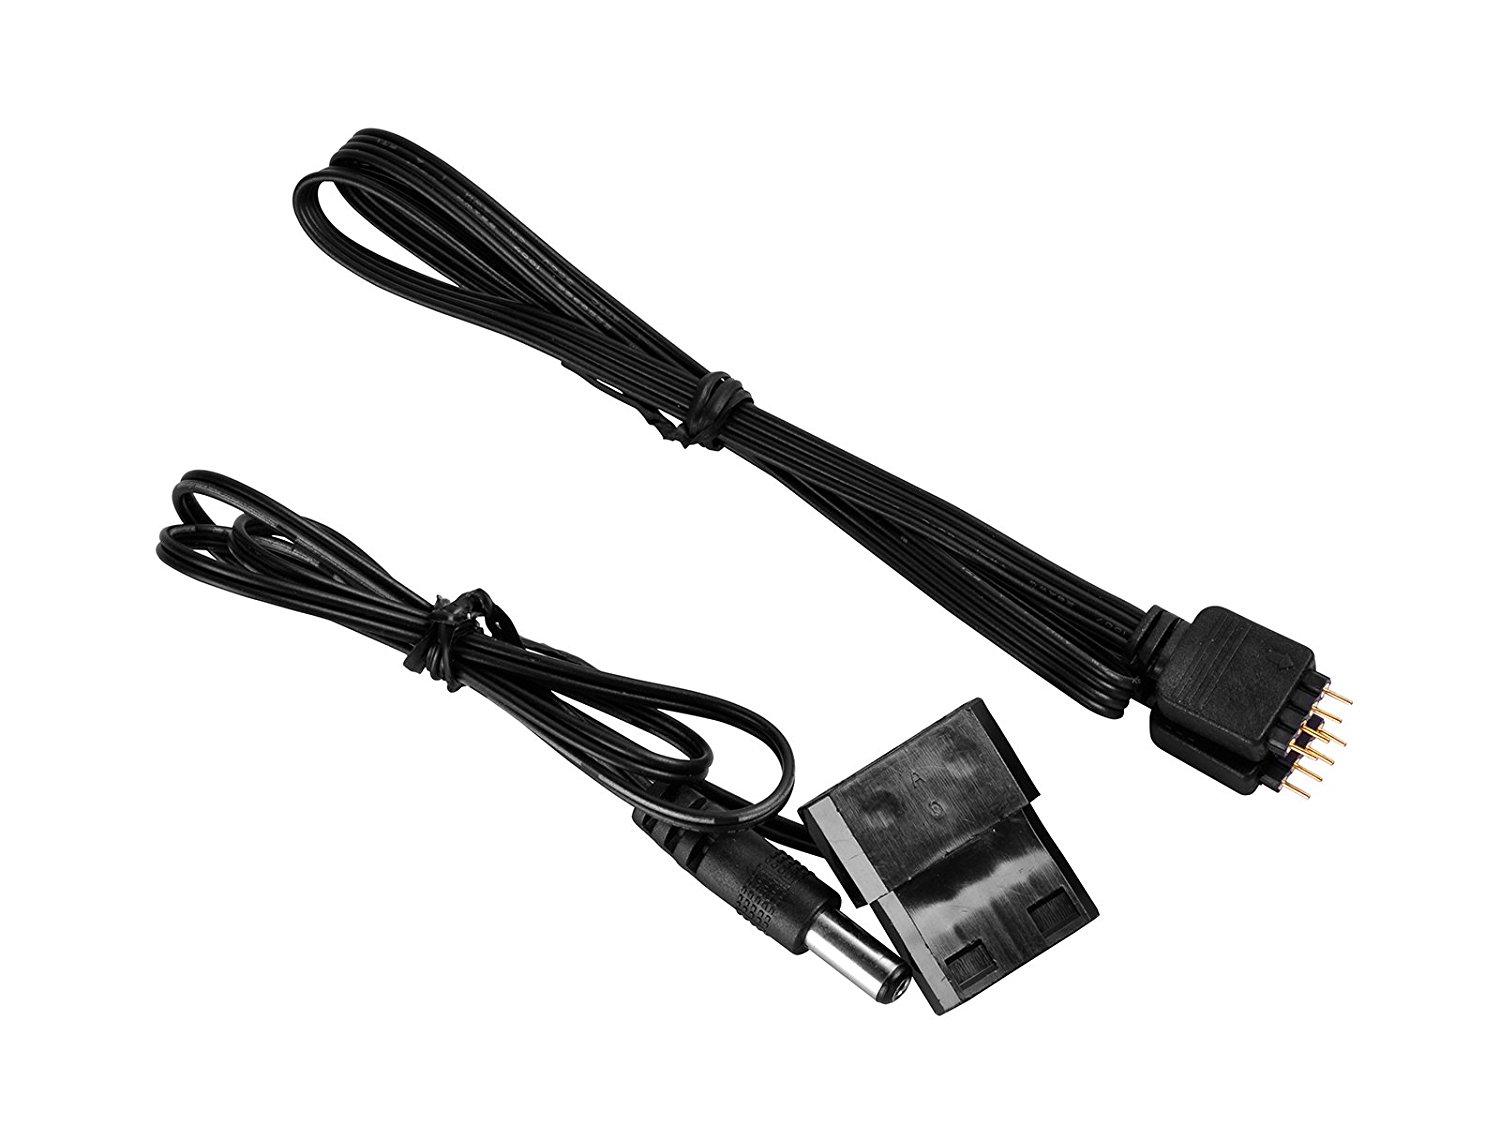 Комплект подсветки корпуса ПК Deepcool RGB 360 (3 светодиодных RGB шнура 50 см, магнитное крепление, контроллер управления с ПДУ, питание Molex) [ DP-LED-RGB360 ]